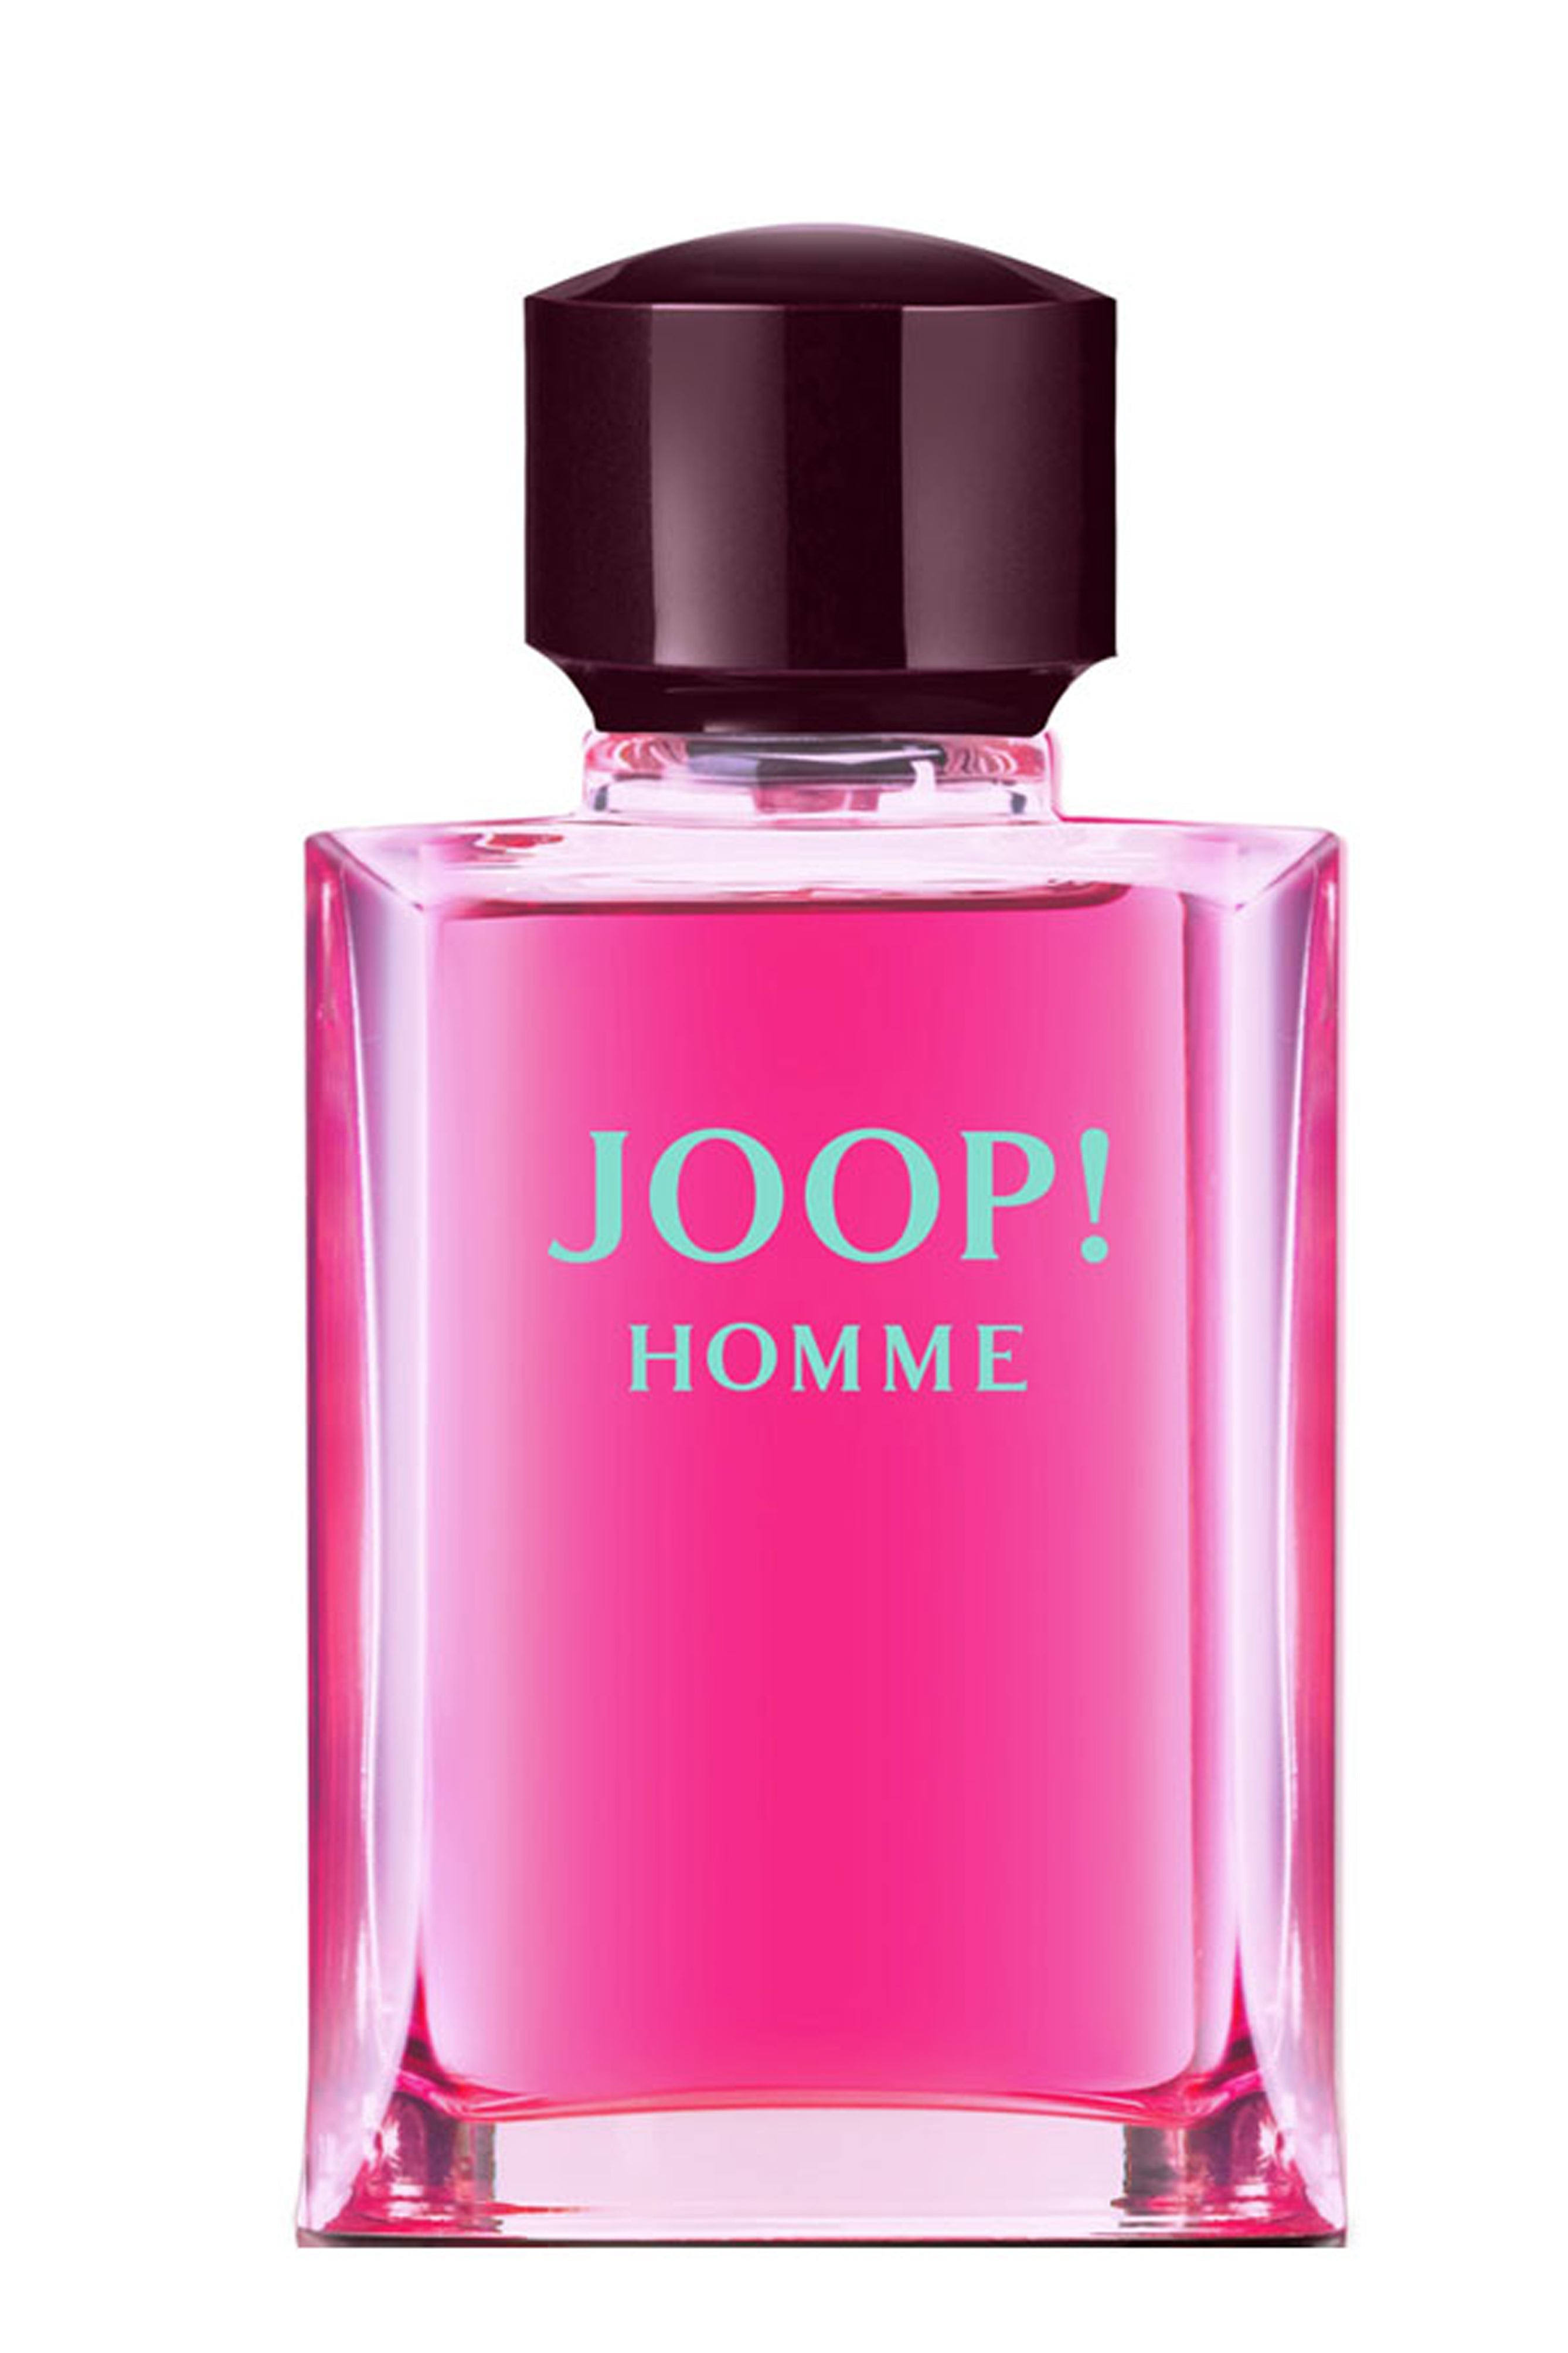 Joop! Homme for Women Eau De Toilette Spray - 125ml